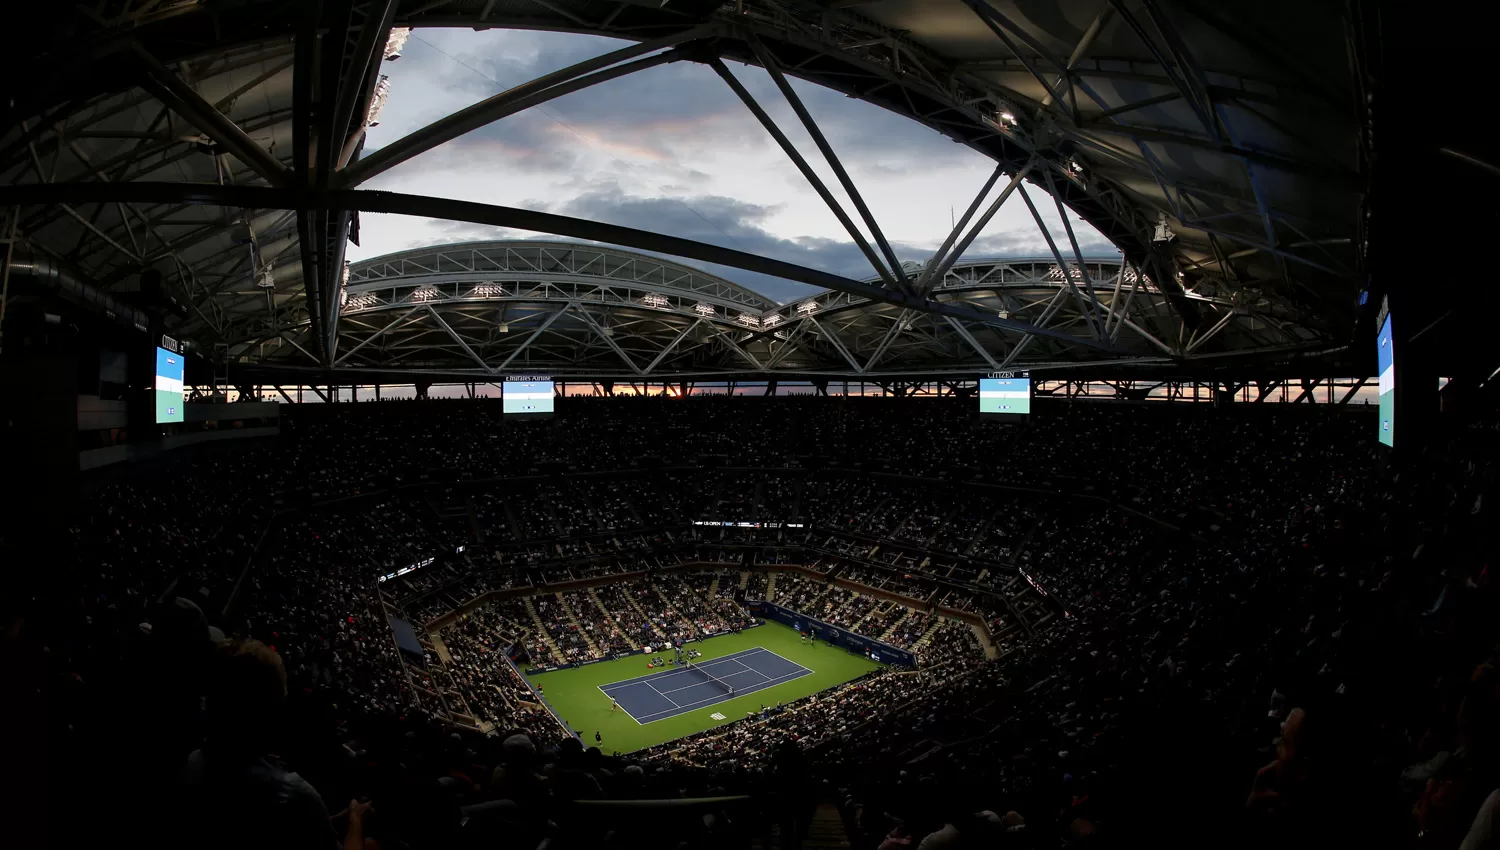 IMPONENTE. El estadio Arthur Ashe, con capacidad para 23.000 espectadores, será el escenario de otra apasionante final del US Open.